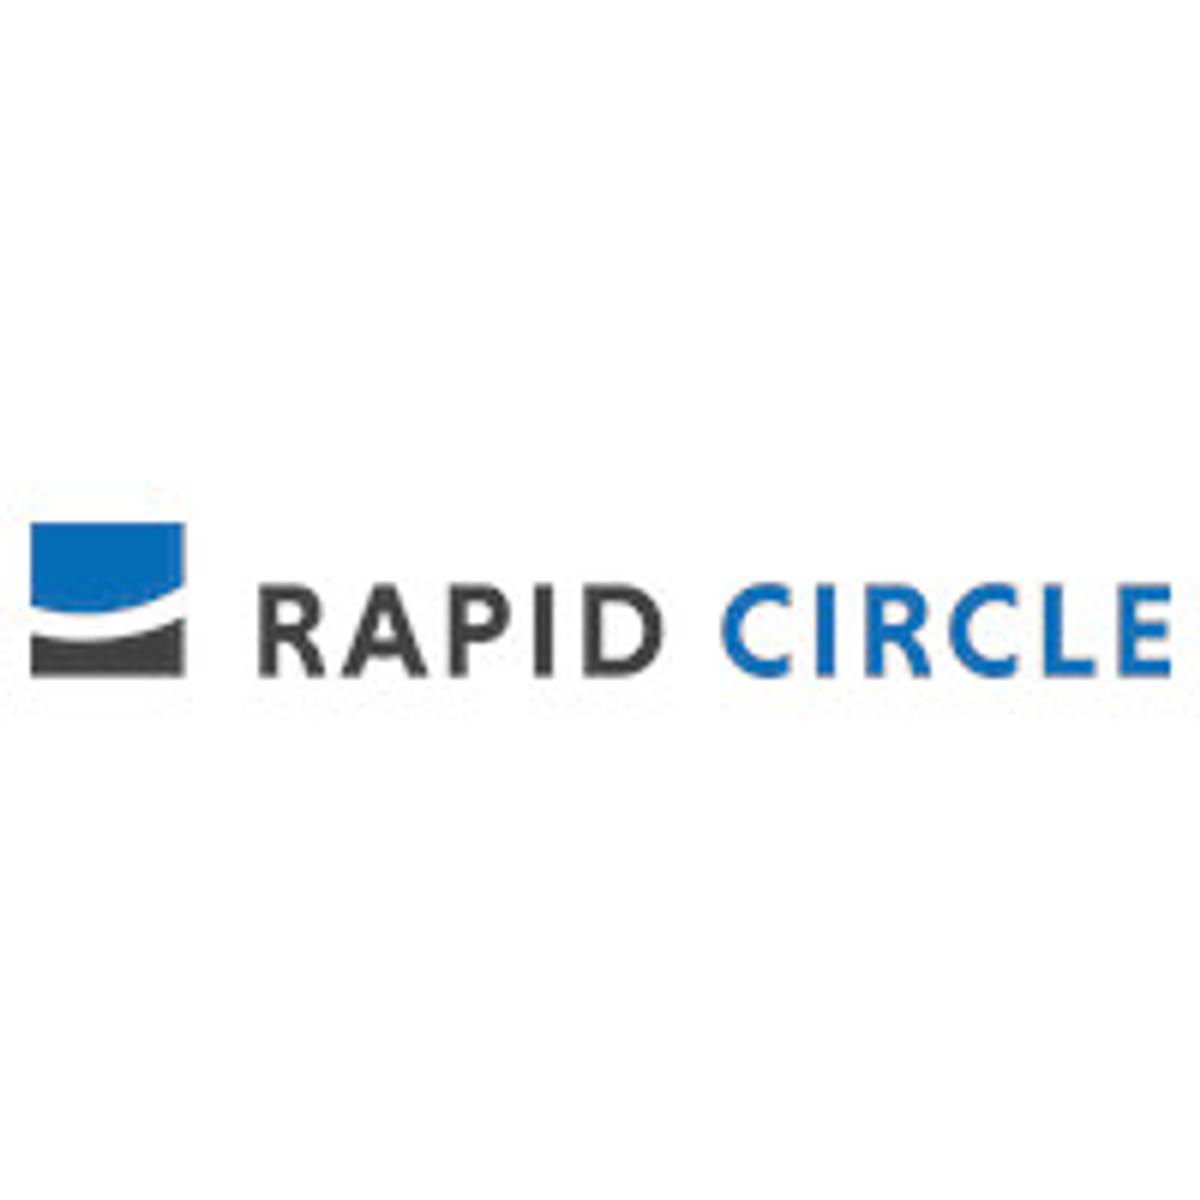 VIRO beveiligt gevoelige data met SOC van Rapid Circle image